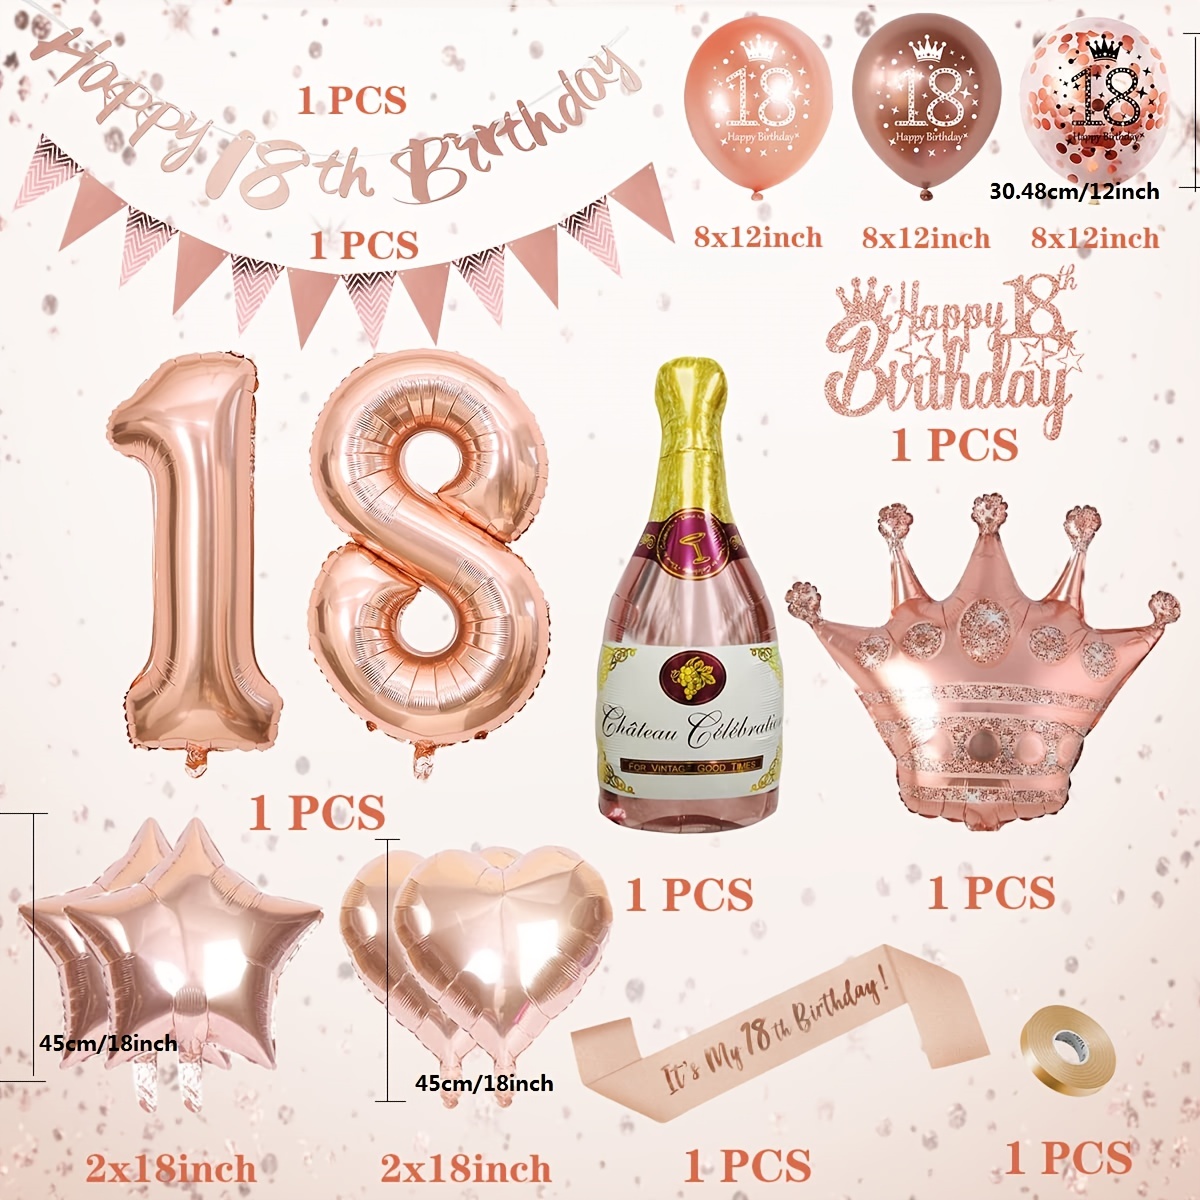  Decoraciones de cumpleaños número 18 para niñas, decoraciones  de fiesta de oro rosa, globos de cumpleaños de 18 años, pancarta de feliz cumpleaños  18, tiara de cumpleaños 18, globos de confeti